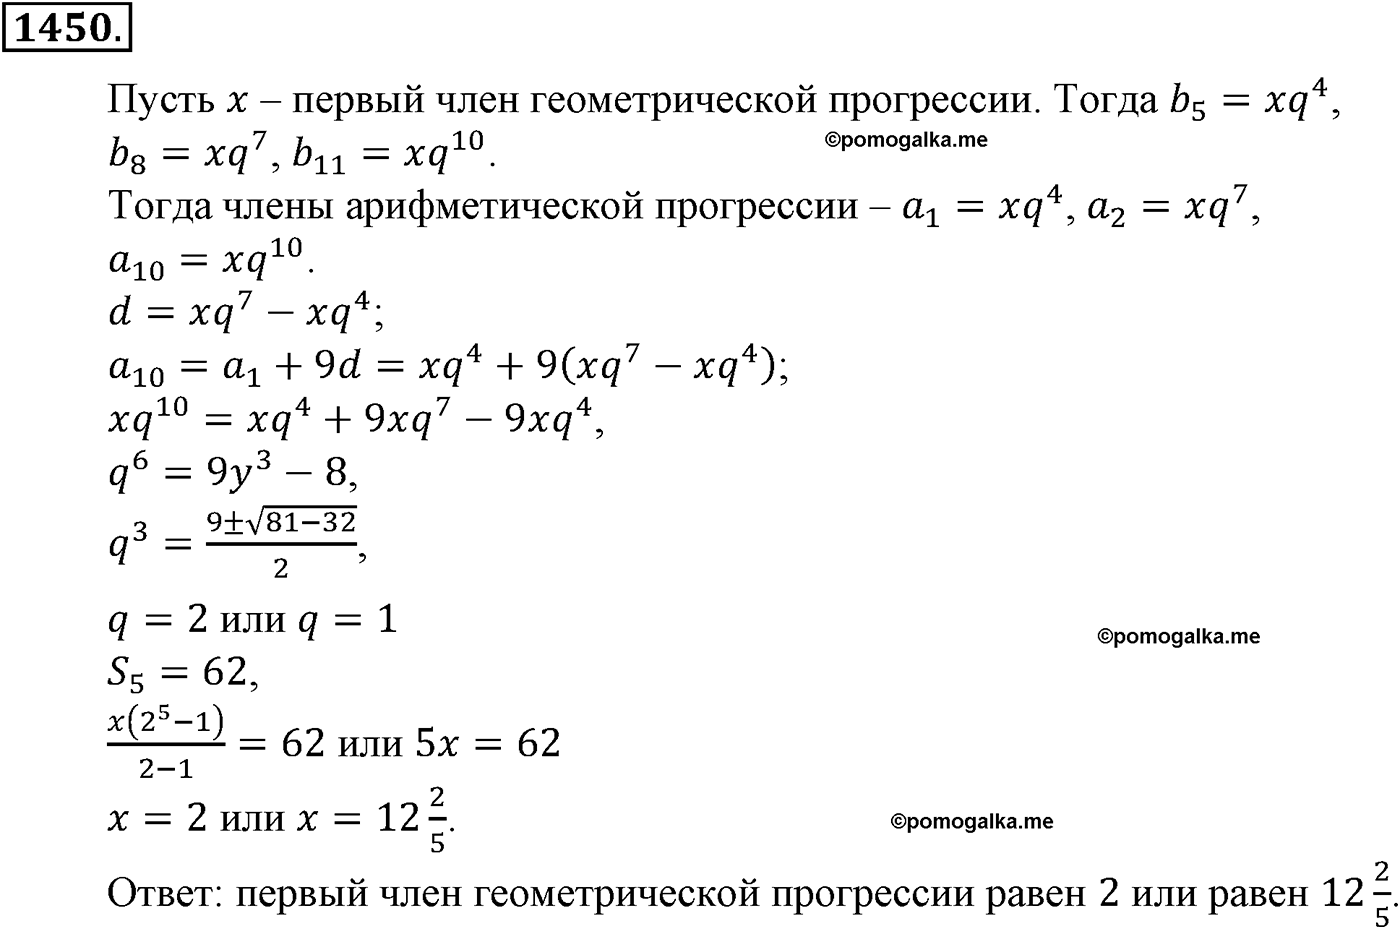 разбор задачи №1450 по алгебре за 10-11 класс из учебника Алимова, Колягина